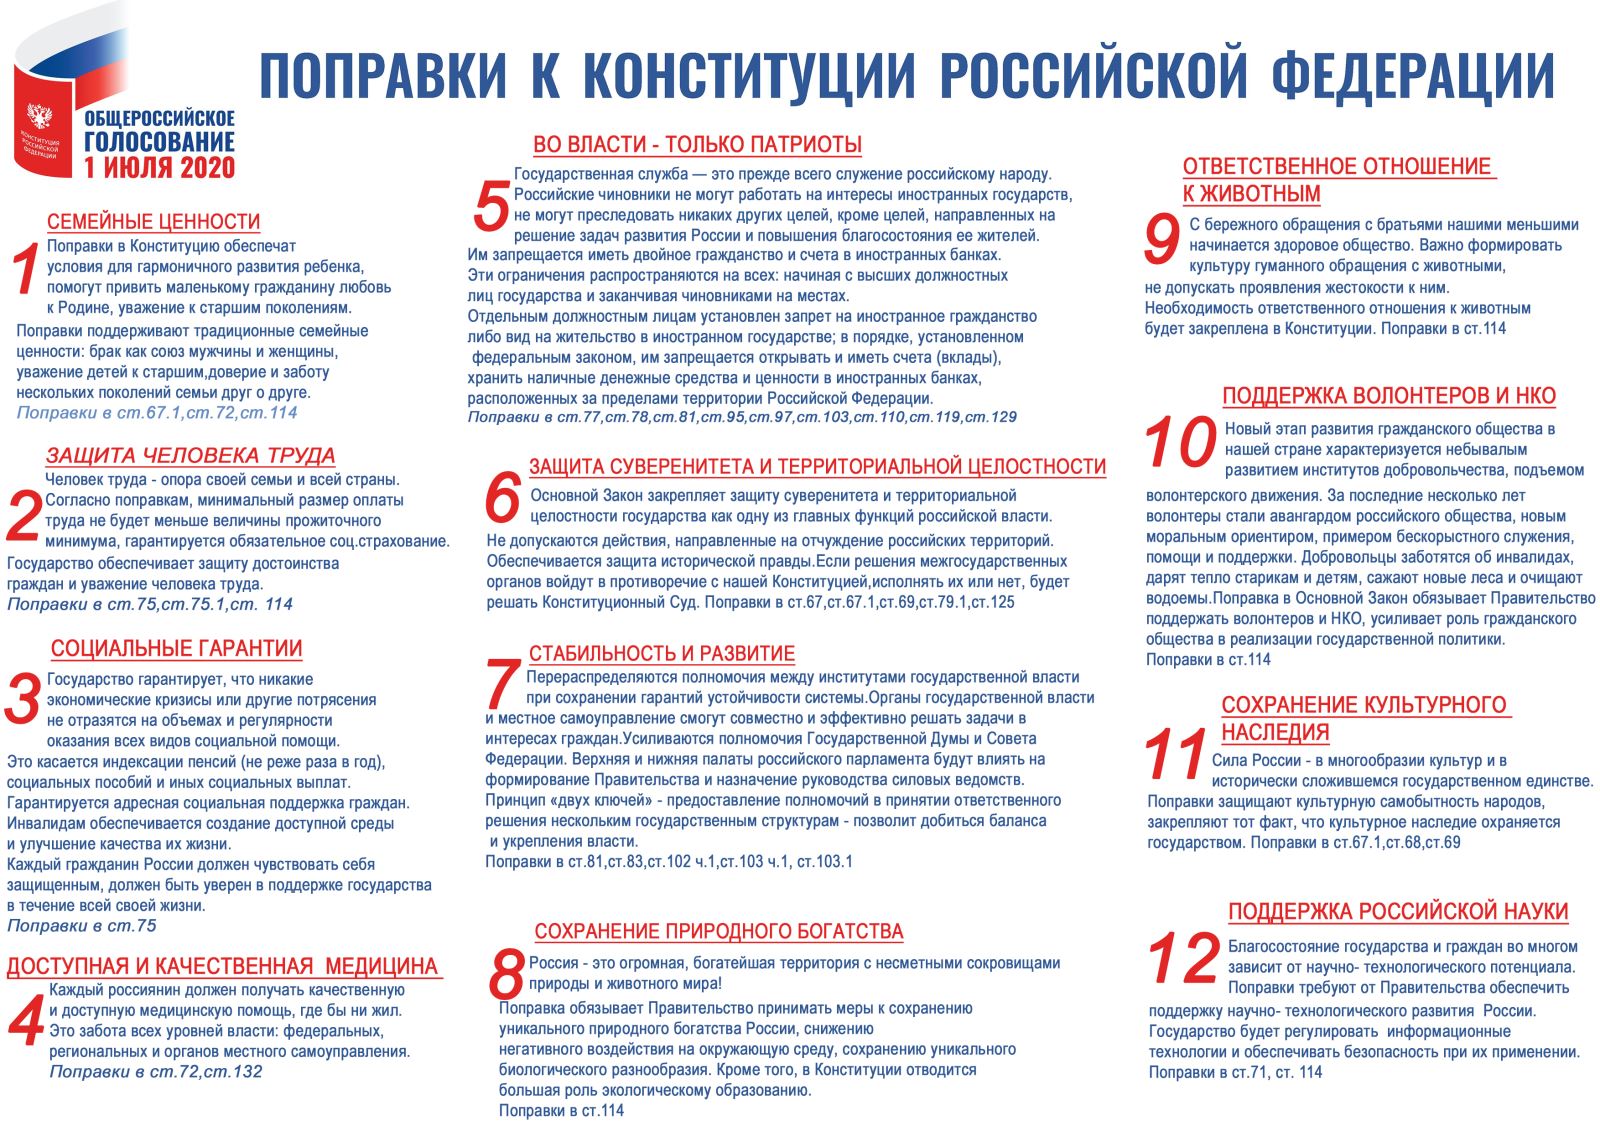 Какие изменение 1 июля. Важнейшие поправки в Конституции РФ 2020. Изменения в Конституции РФ 2020 список изменений. Основных поправок в Конституции РФ 2020 года. Изменения в Конституции 2020 года в России.